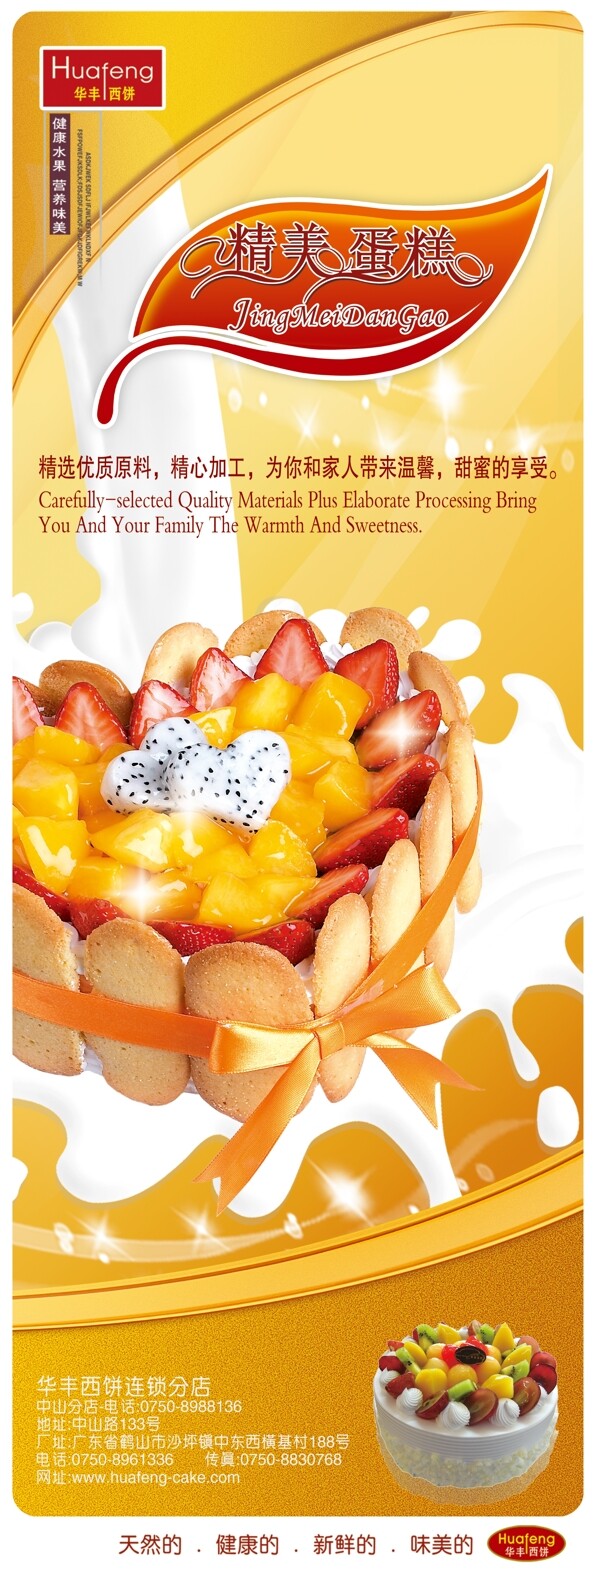 蛋糕广告海报图片